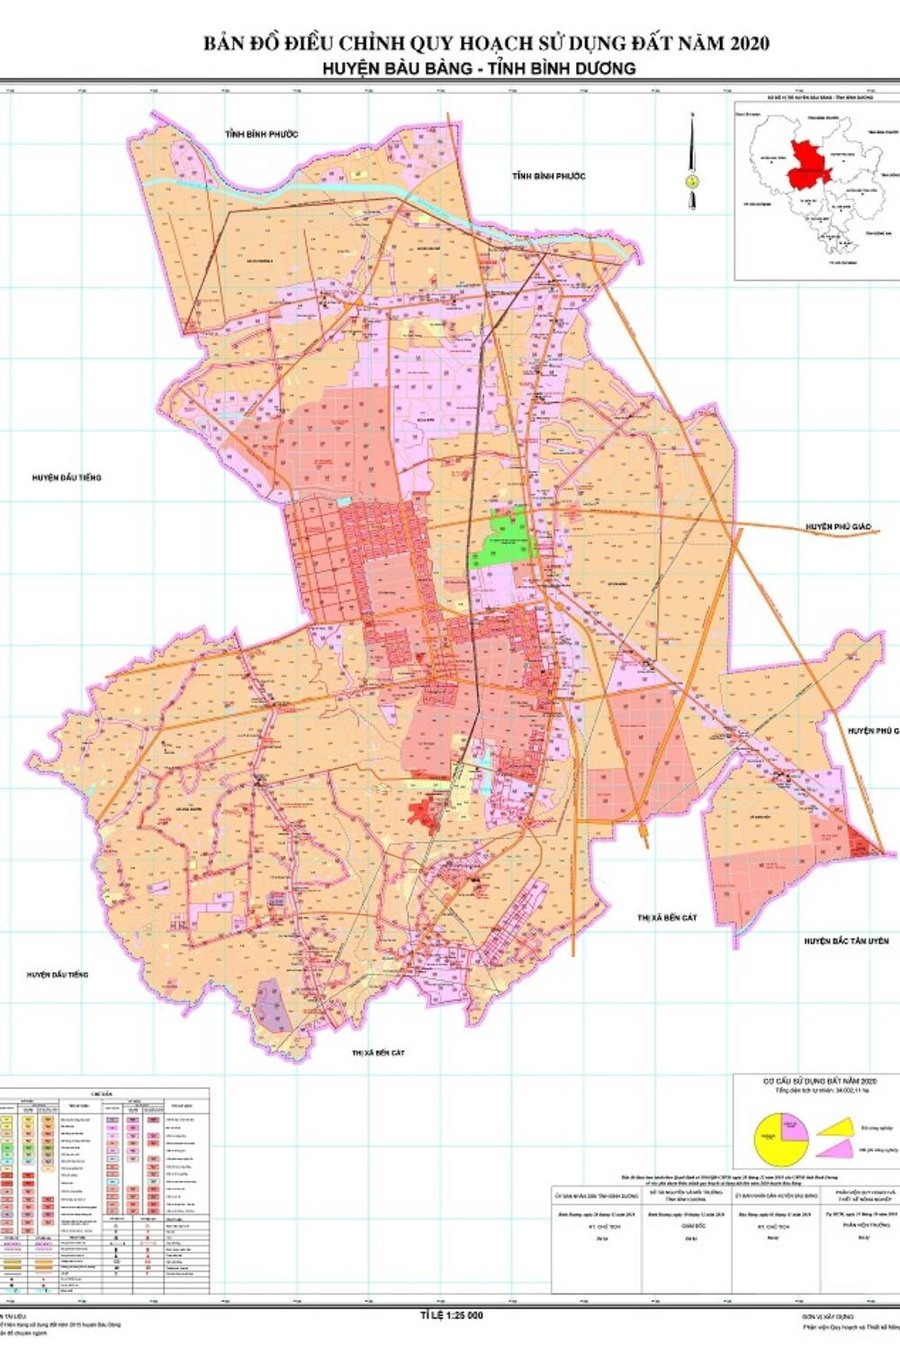 Bản đồ kế hoạch sử dụng đất huyện Bàu Bàng năm 2020